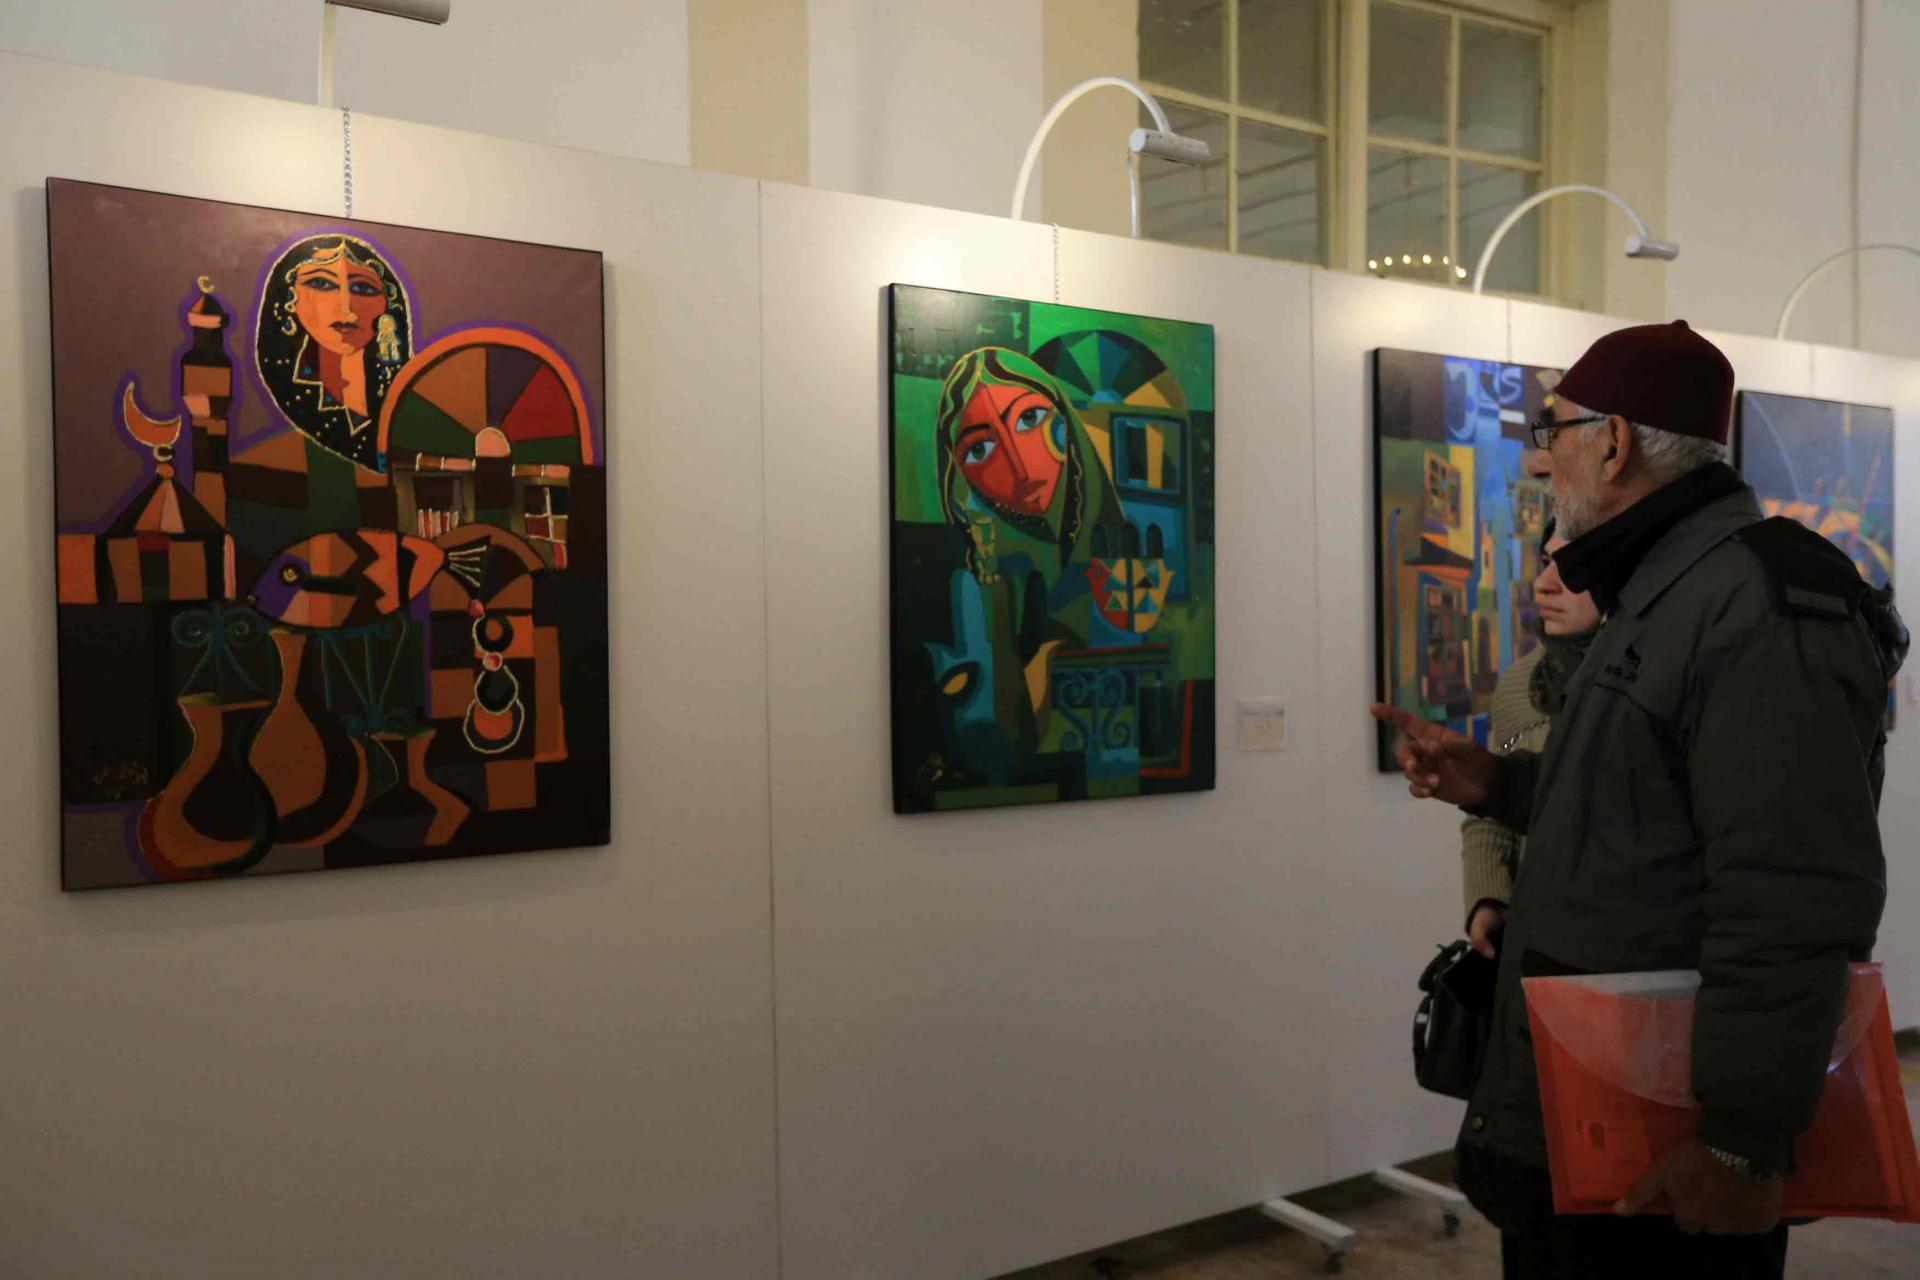 تعرض في المتحف أعمال لـ29 فنانا حول الفن المعاصر